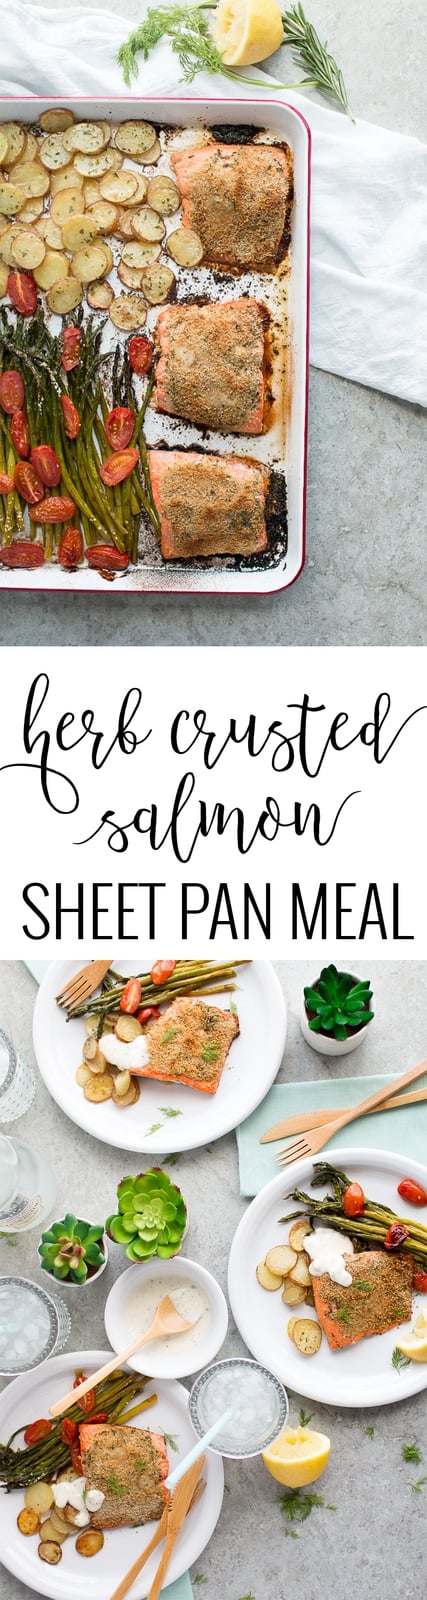 Herb Crusted Salmon Sheet Pan Meal pin 